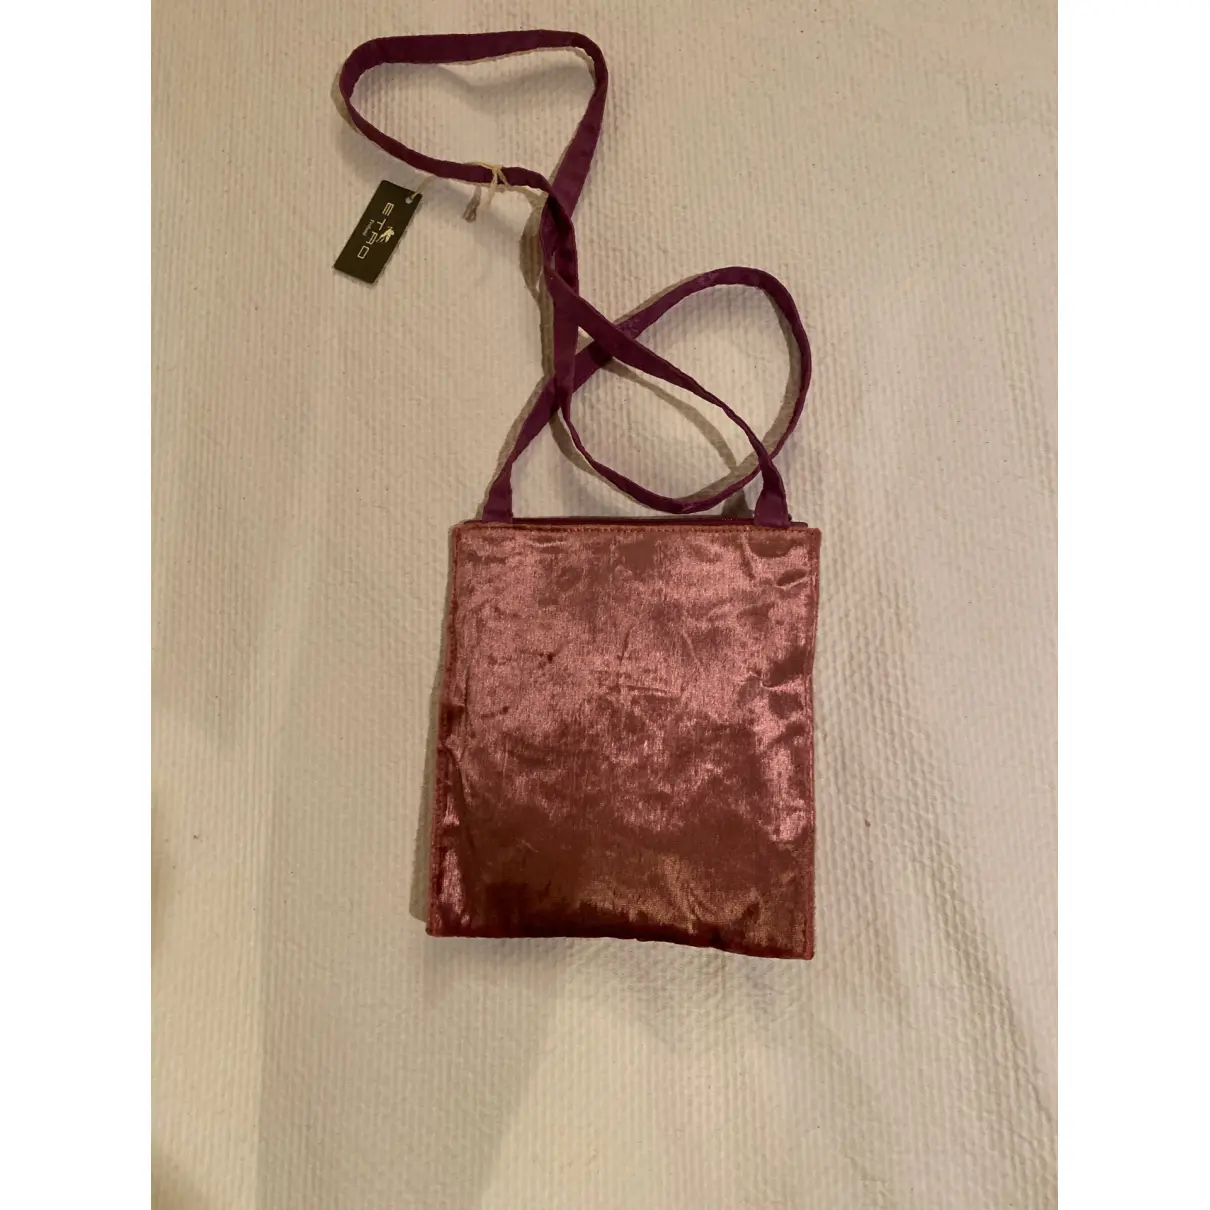 Buy Etro Velvet handbag online